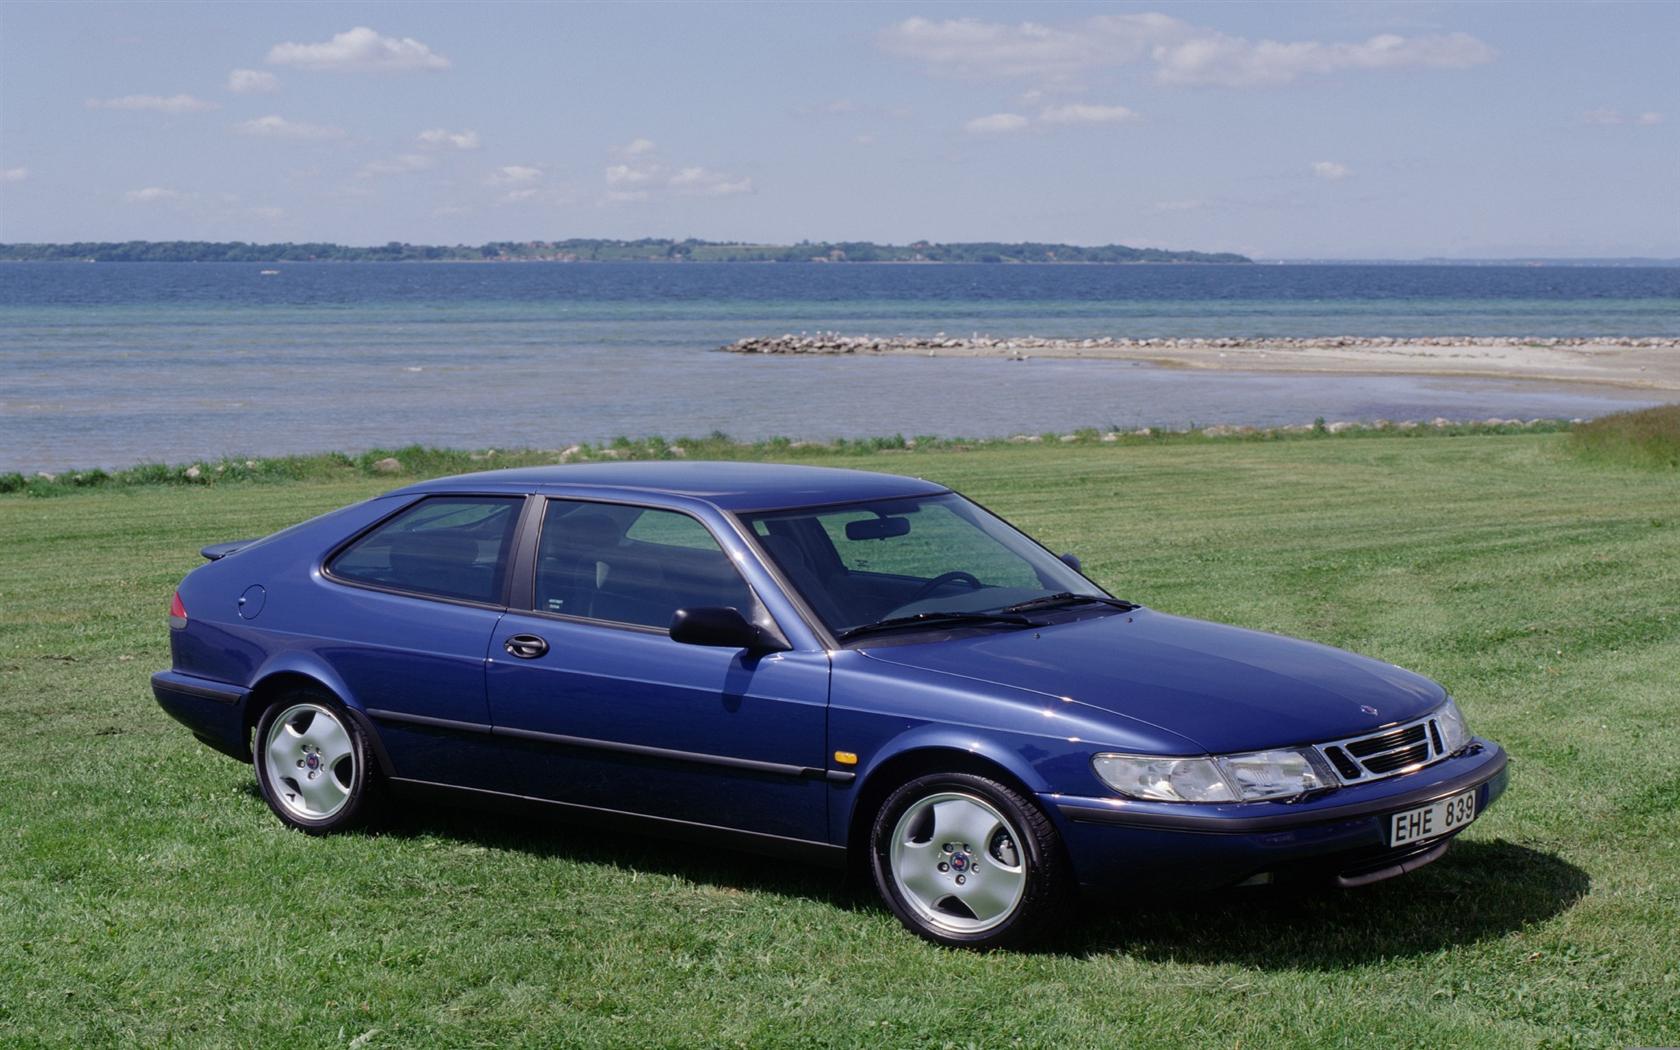 1998 Saab 900